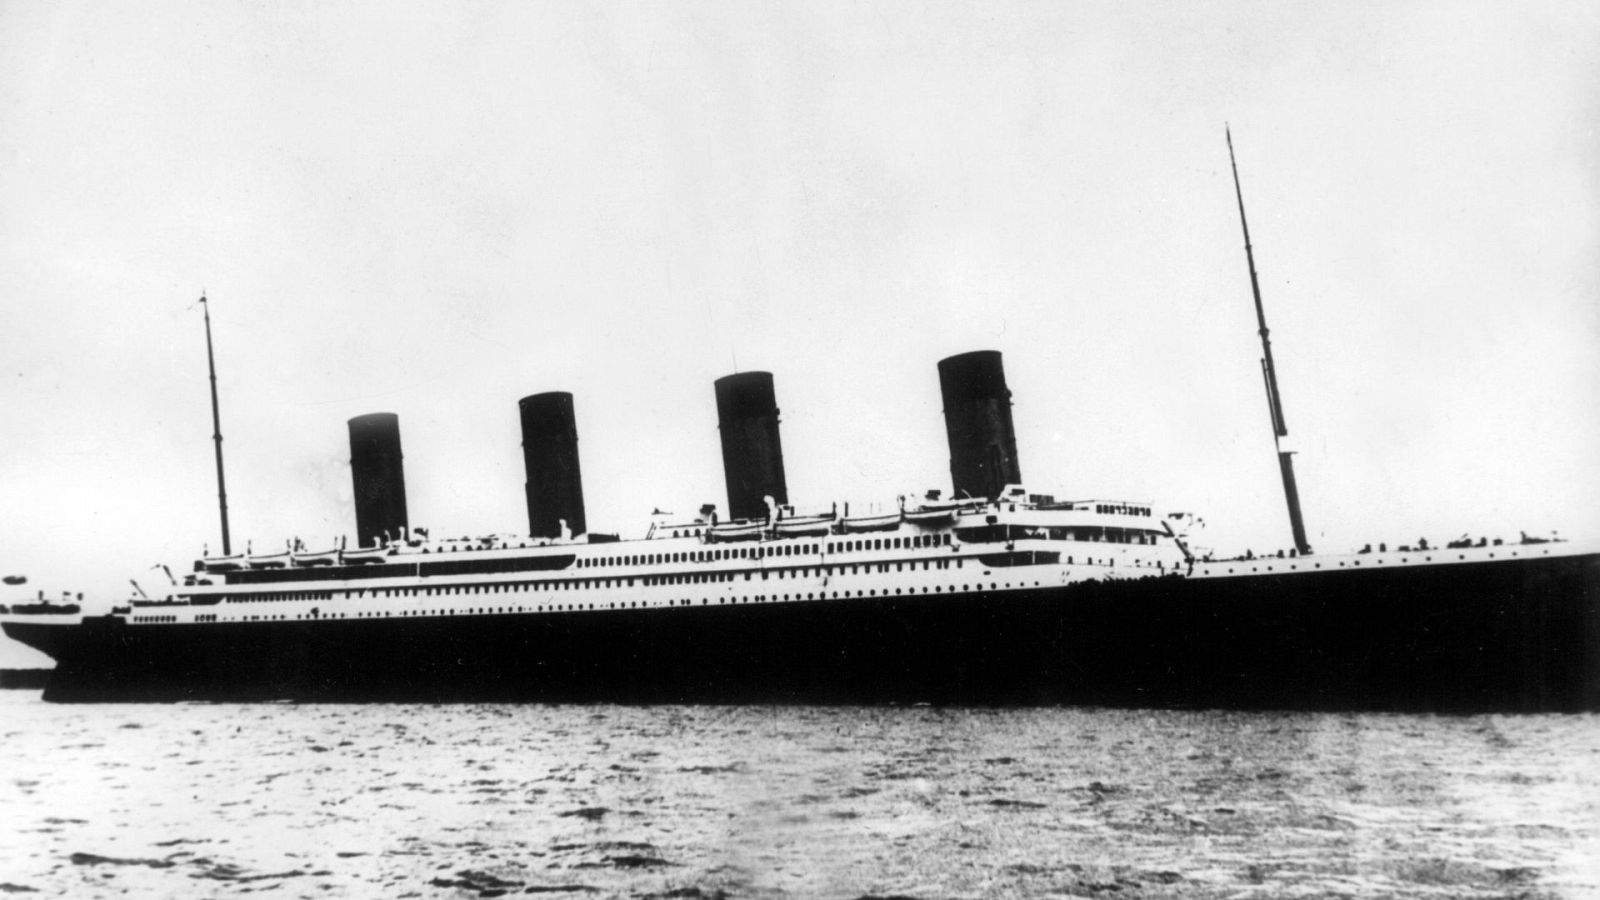 De los 2225 pasajeros que tenía el Titanic, 10 eran españoles.